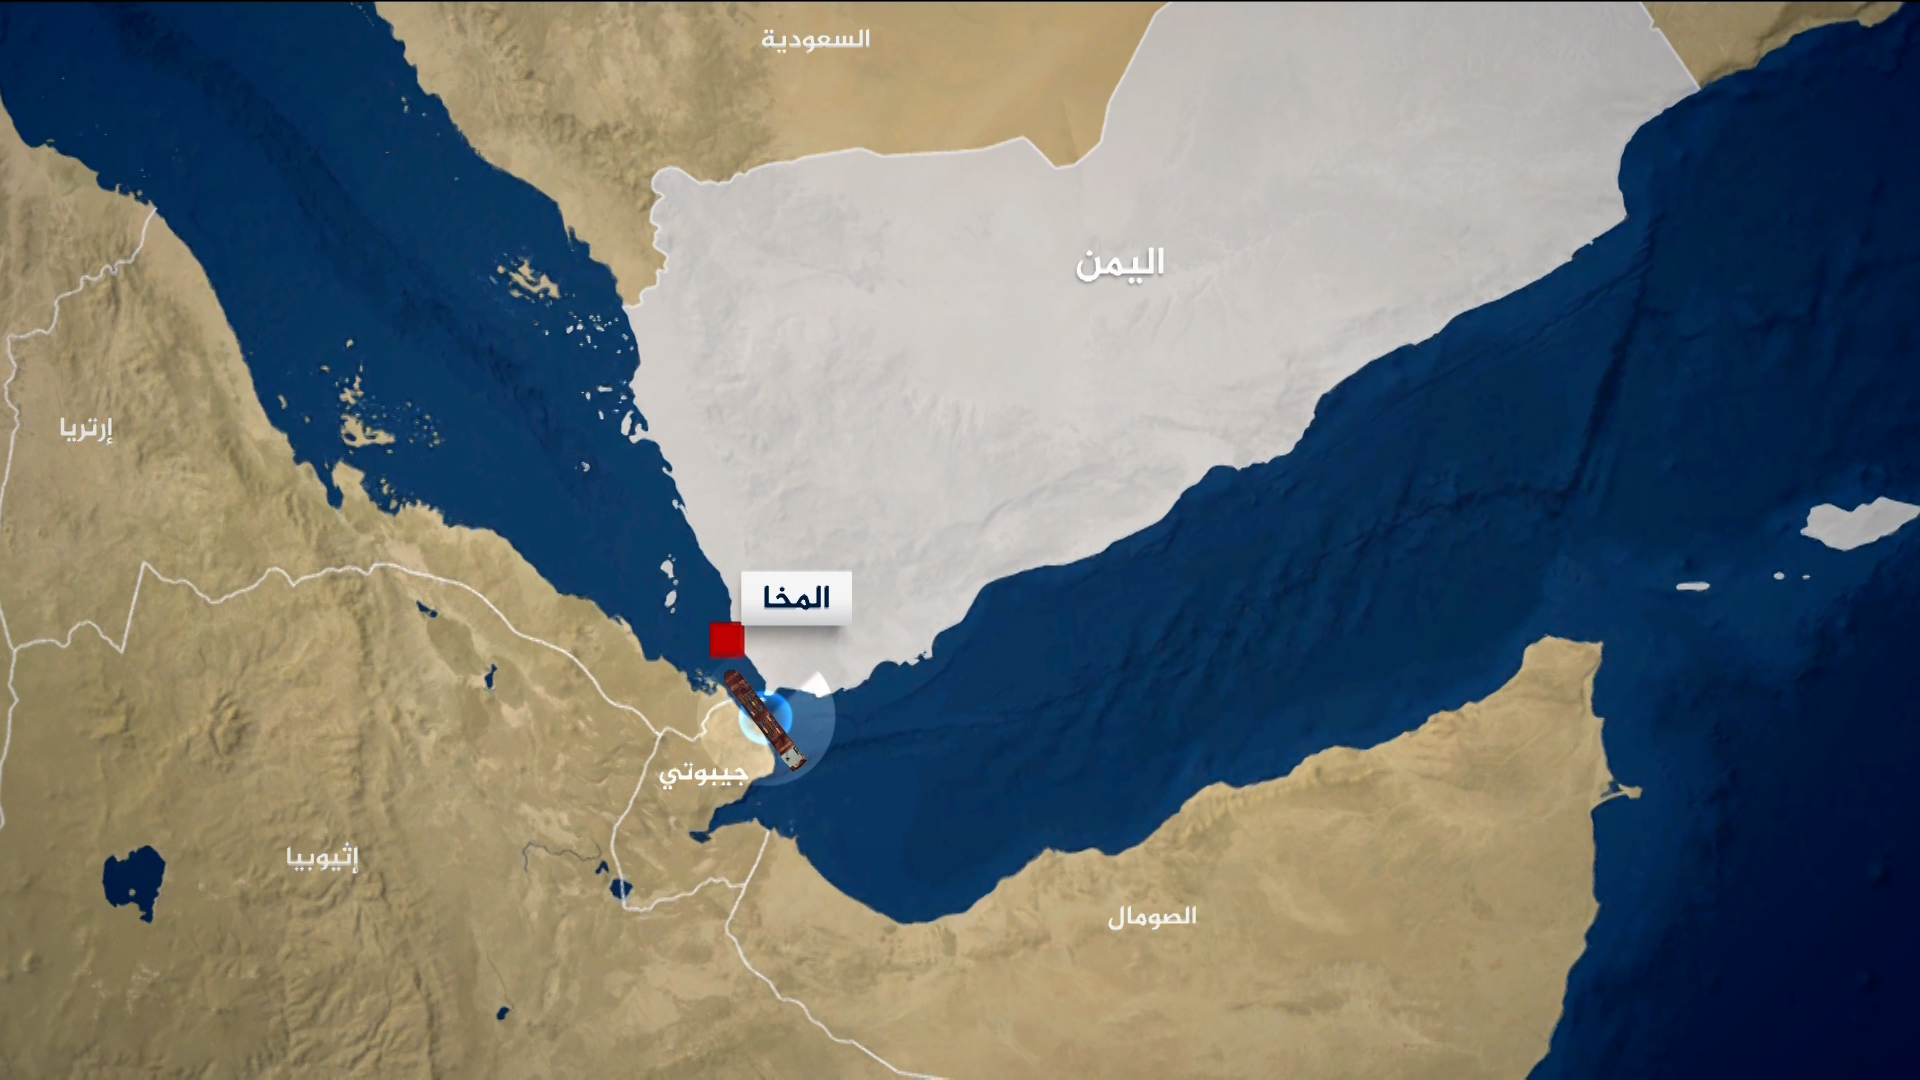 بوليتيكو: إدارة بايدن تبحث الرد على الحوثيين | أخبار – البوكس نيوز